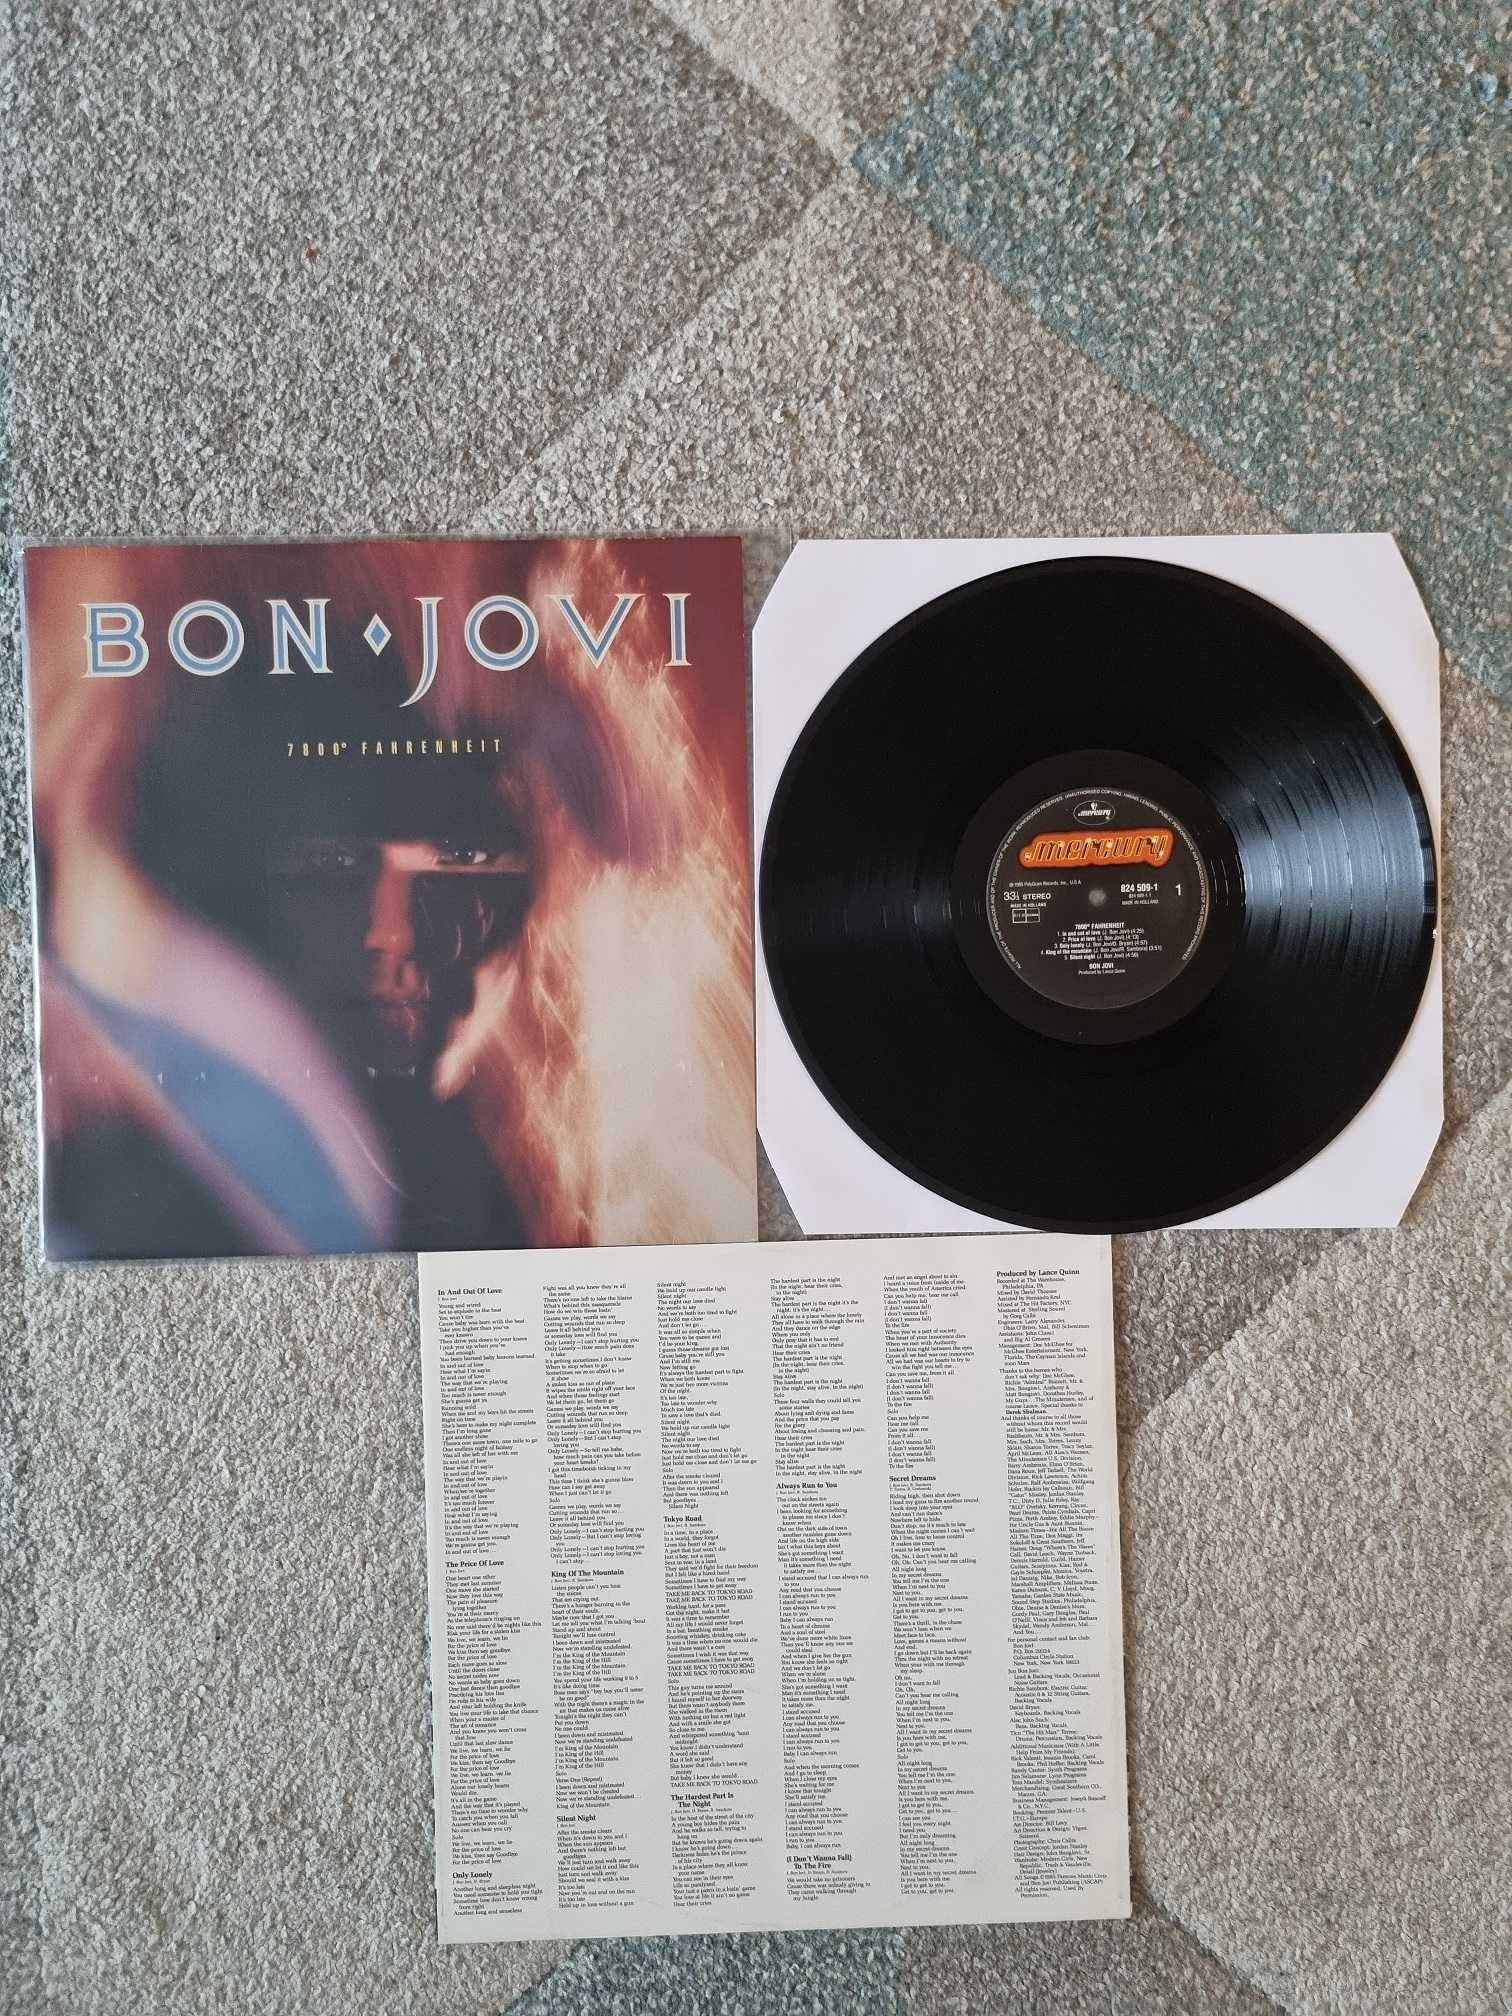 Discuri vinil (muzica) - Bon Jovi, Billy Idol